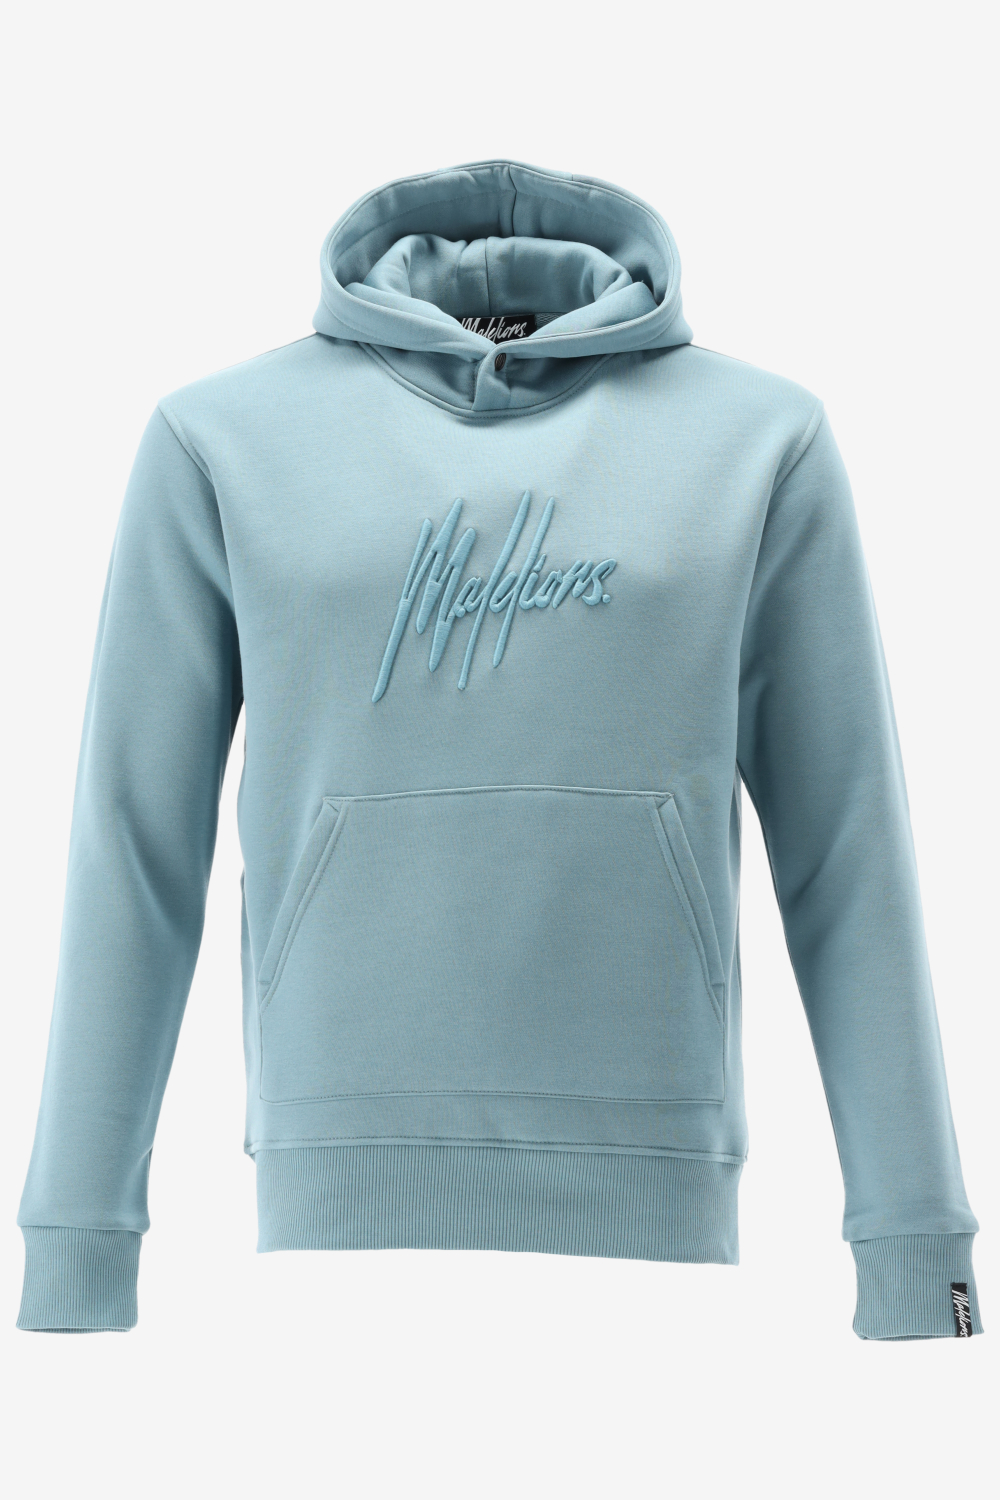 Malelions hoodie essentials hoodie maat XL